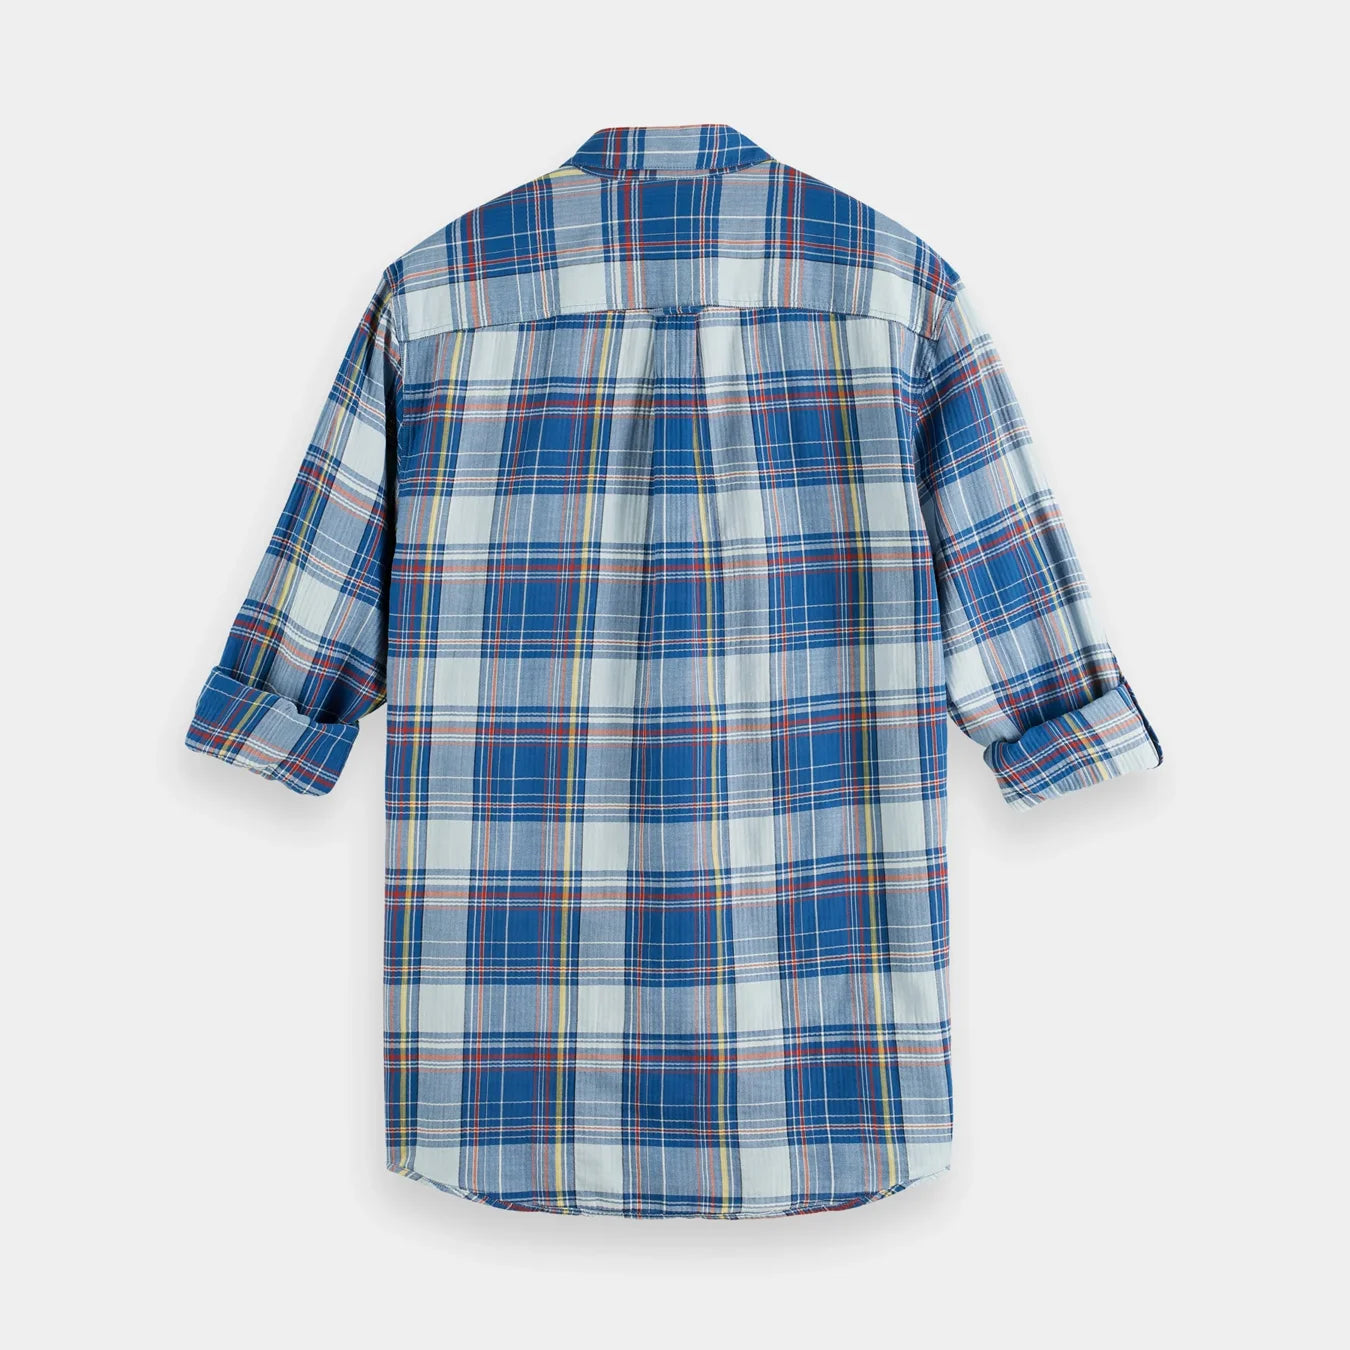 'Scotch & Soda Lightweight Seersucker Shirt' in 'Blue Check' colour